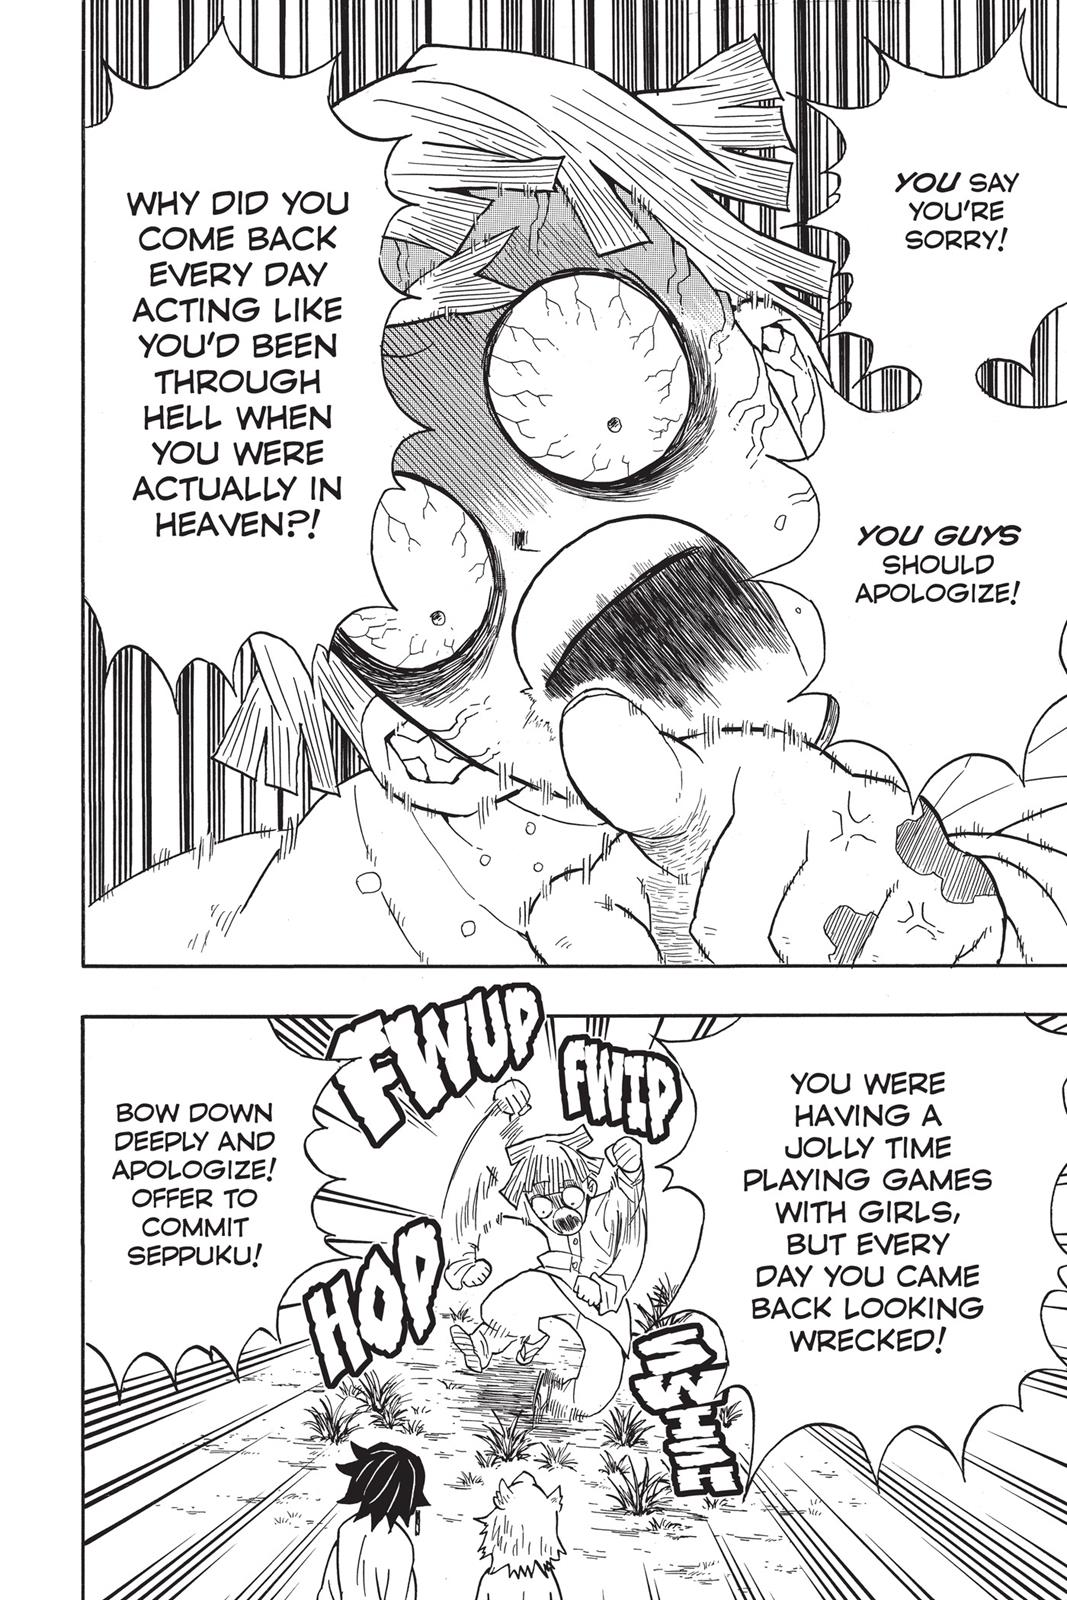 Demon Slayer Manga Manga Chapter - 49 - image 8